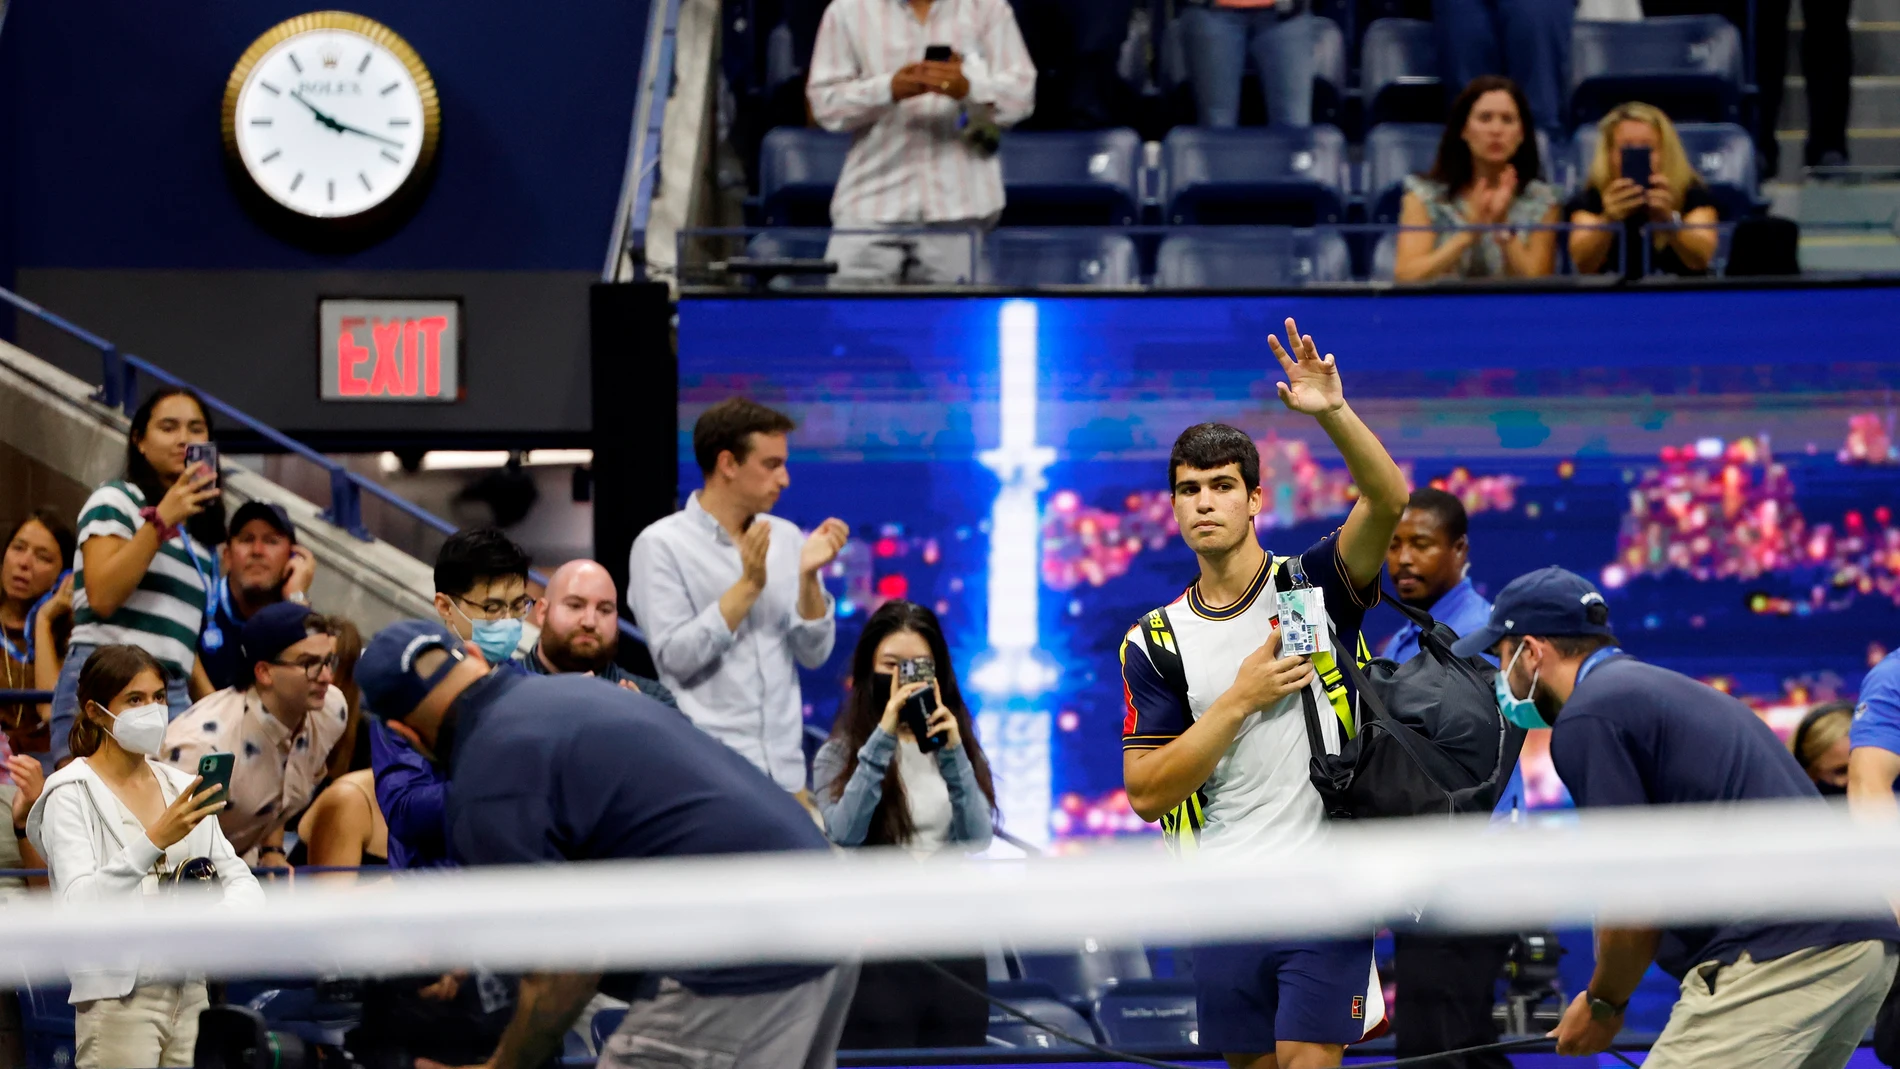 Carlos Alcaraz obligado a abandonar el US Open por una lesión